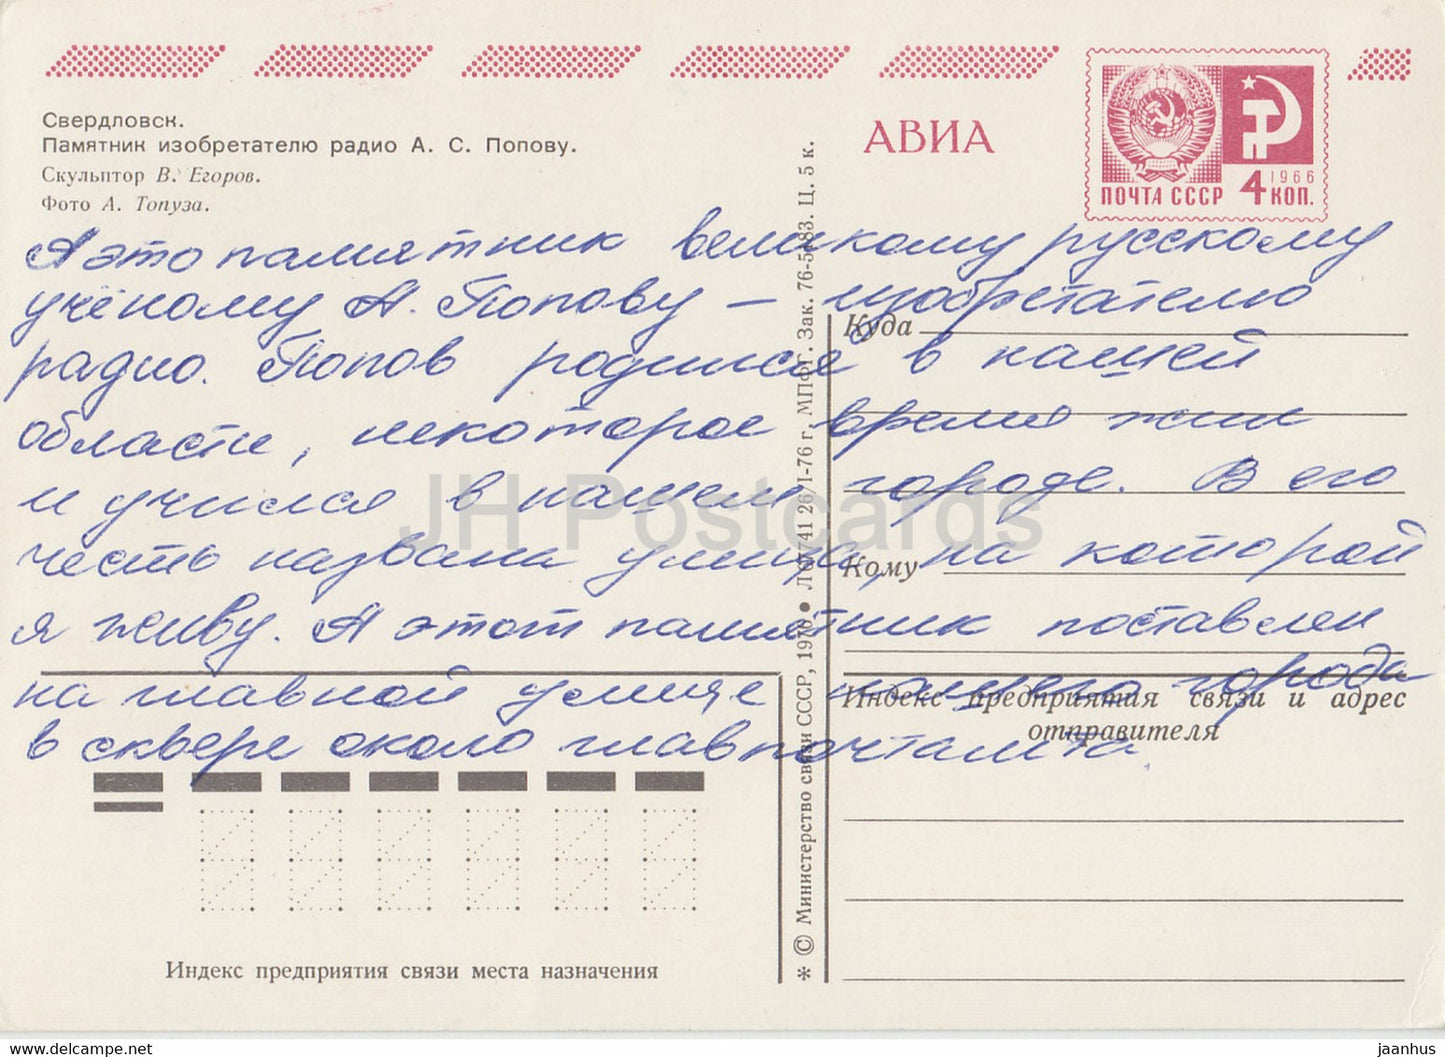 Swerdlowsk-Denkmal für Radio-Erfinder Popov - AVIA - Ganzsache - 1970 - Russland UdSSR - gebraucht